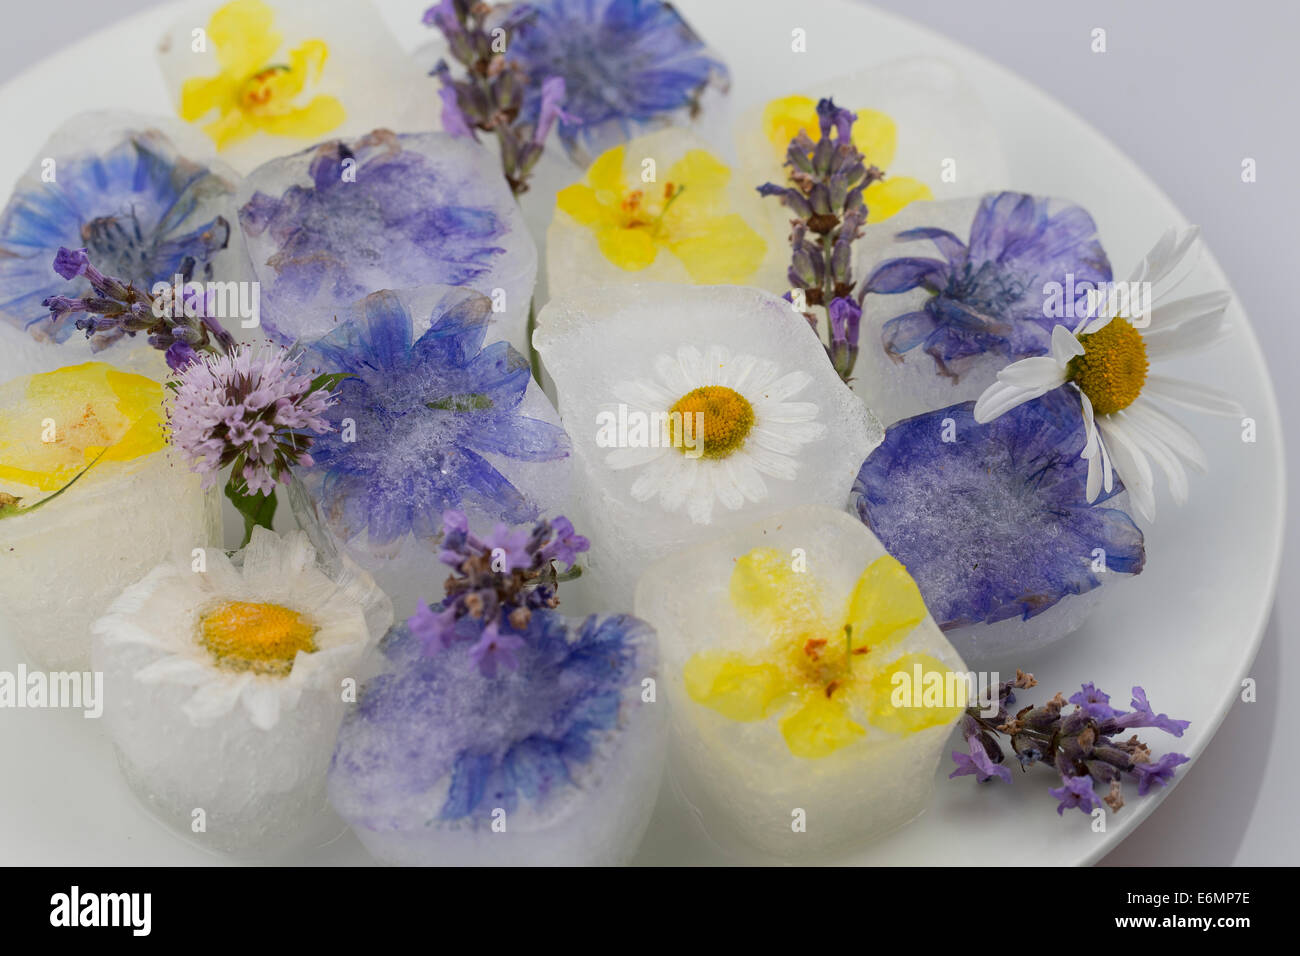 Ice Cube, cubes de glace avec fleurs comestibles, fleurs, Blüteneiswürfel Blüten-Eiswürfel, Eiswürfel, mit Blüten, Blütenblättern Banque D'Images